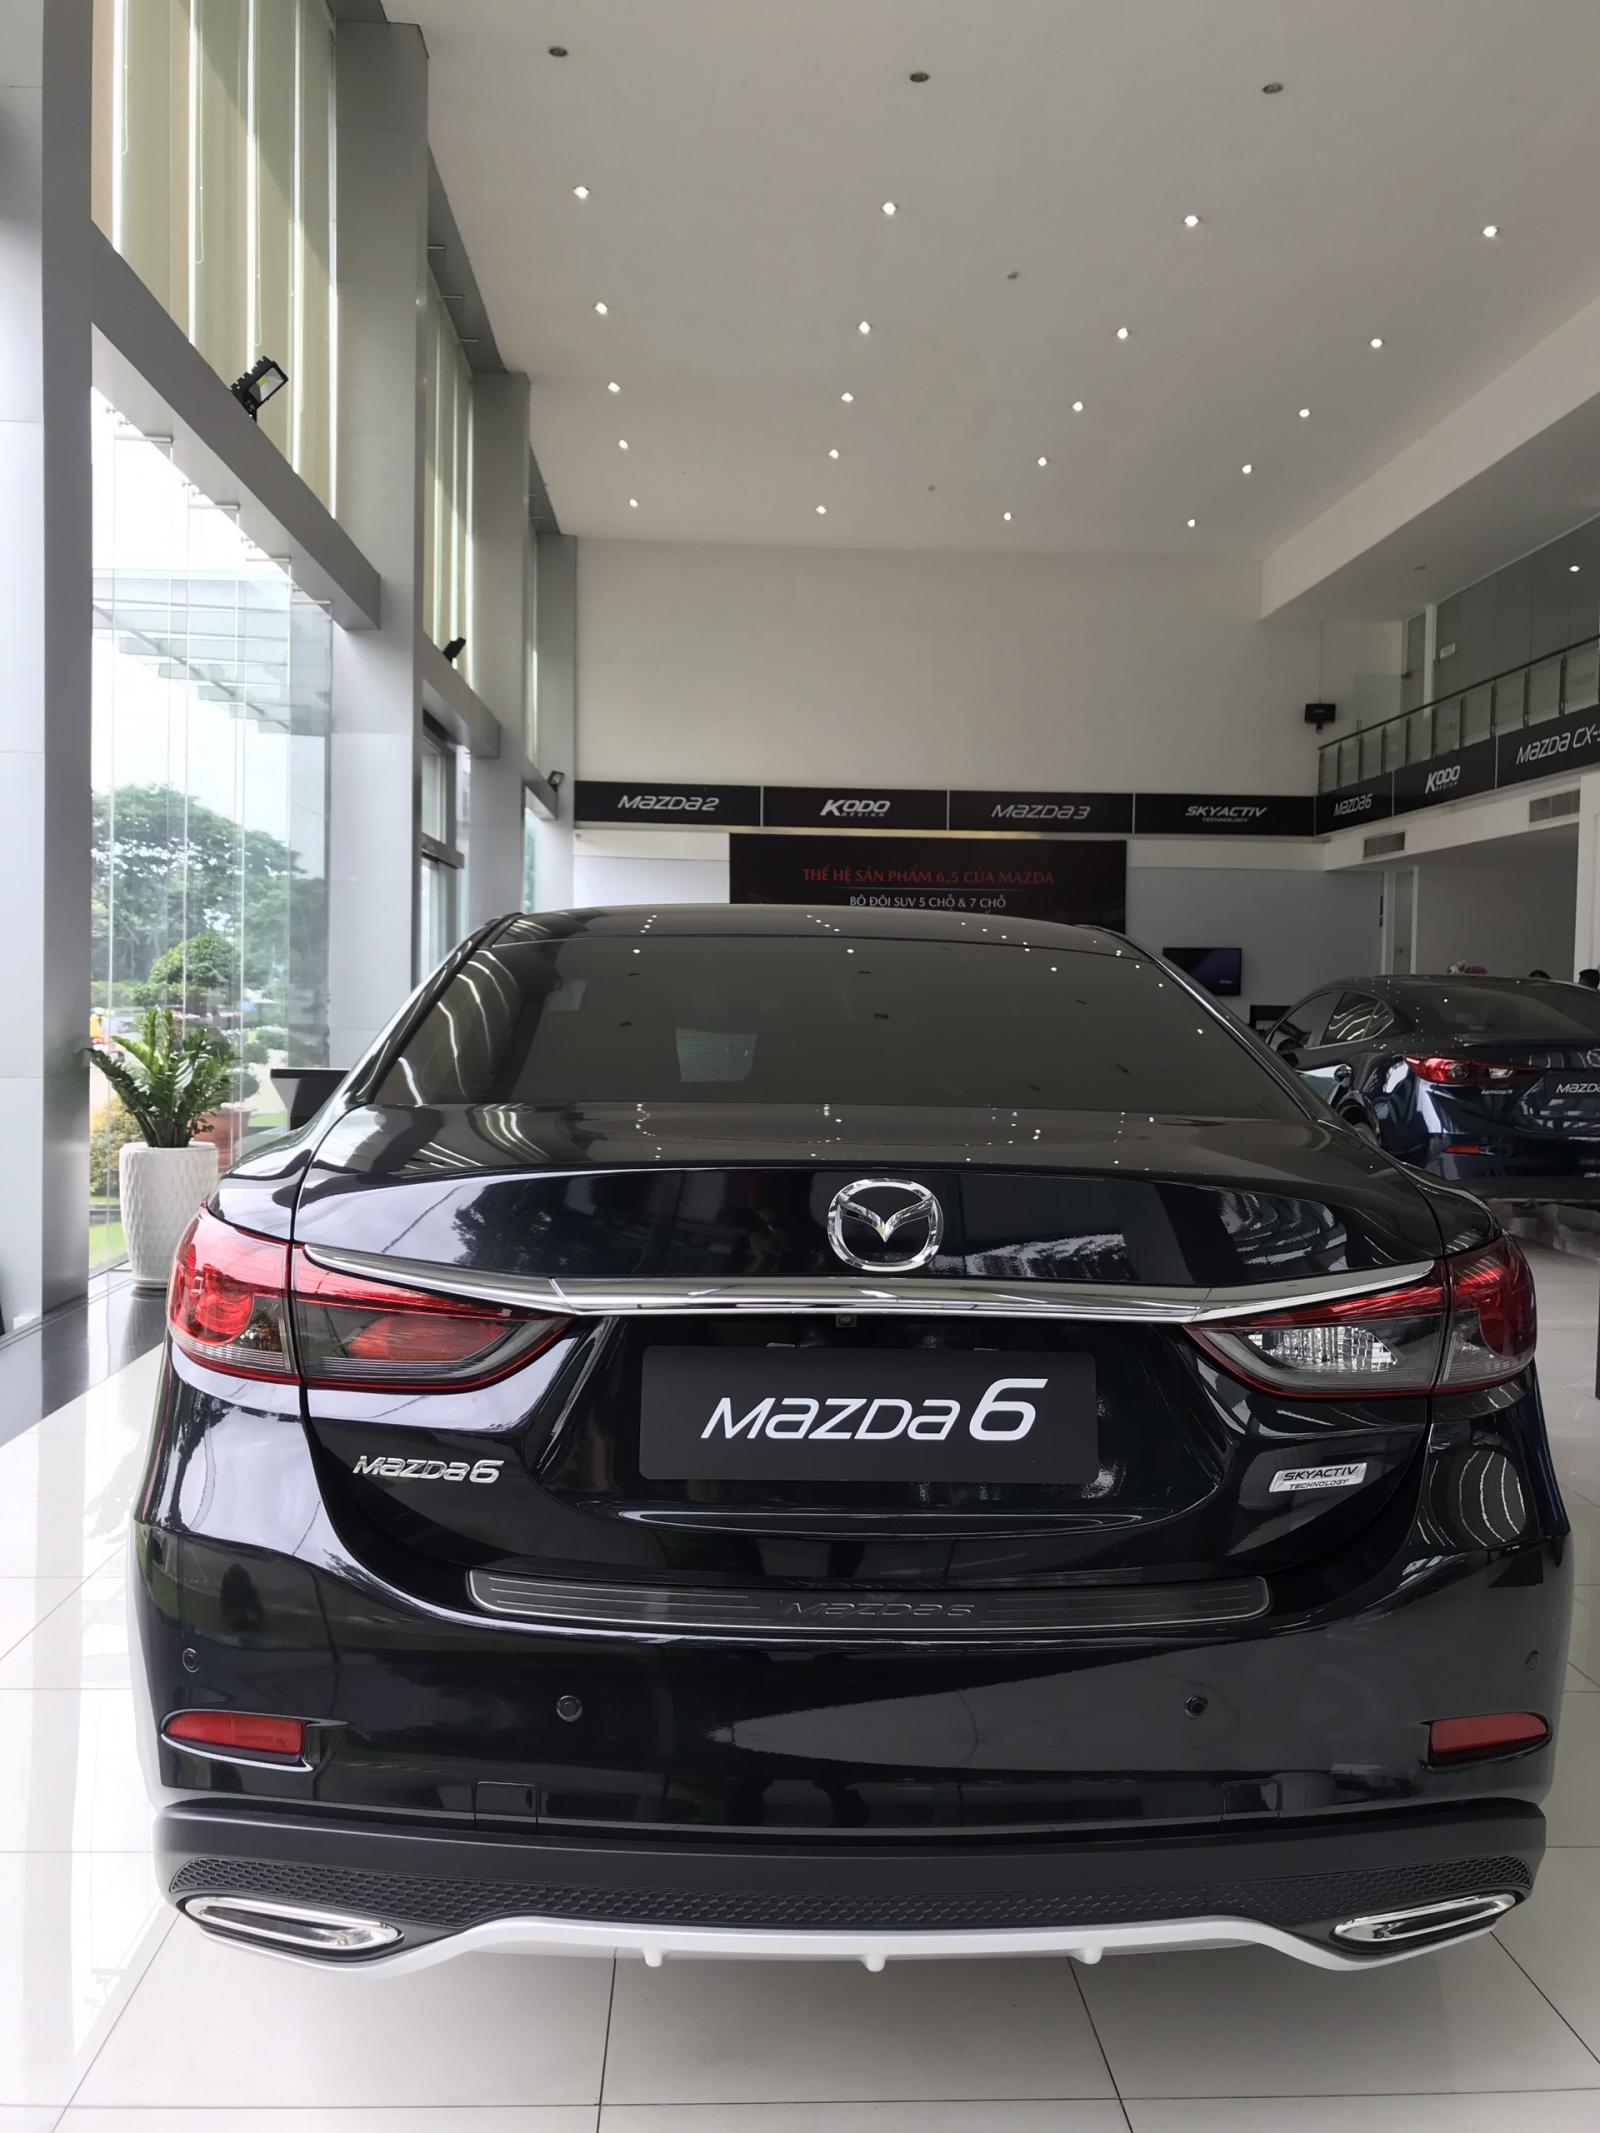 Mazda 6 2019 - Bán Mazda 6 2.0L đời 2019 màu đen mới 100% - Hỗ trợ bank 85%. Liên hệ 0909324410 gặp Hiếu